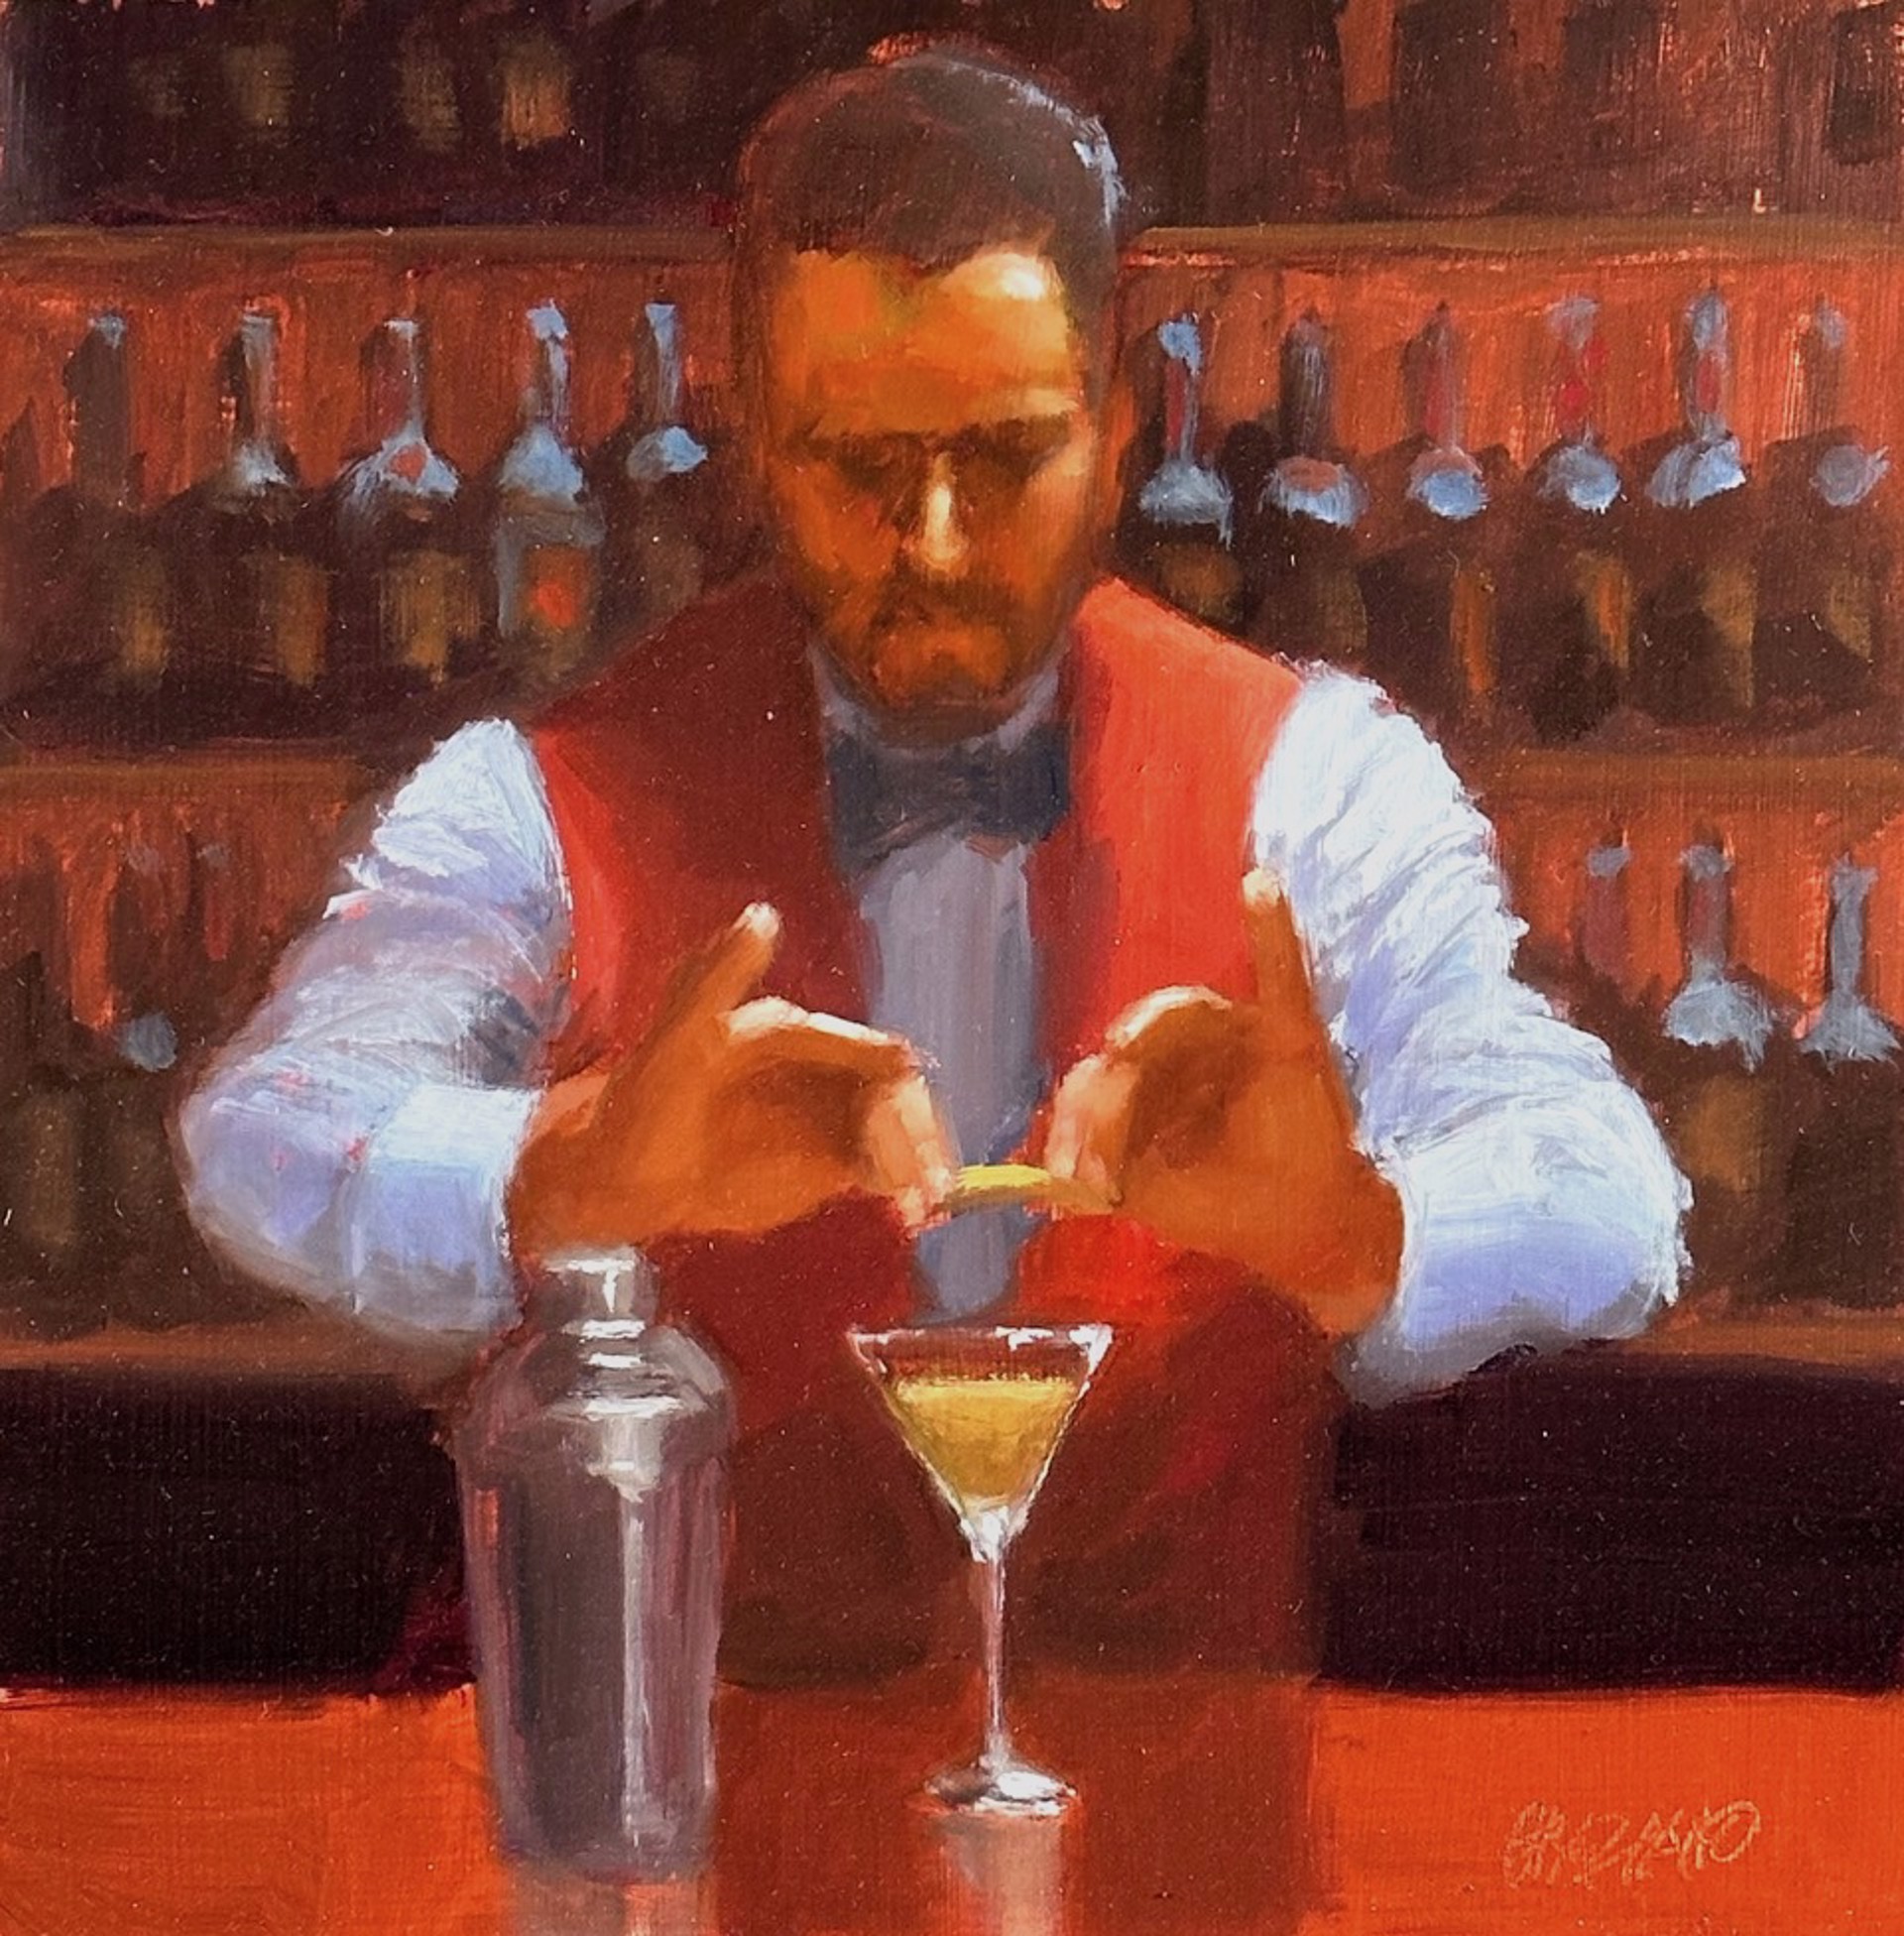 Martini with a Twist by Dan Graziano